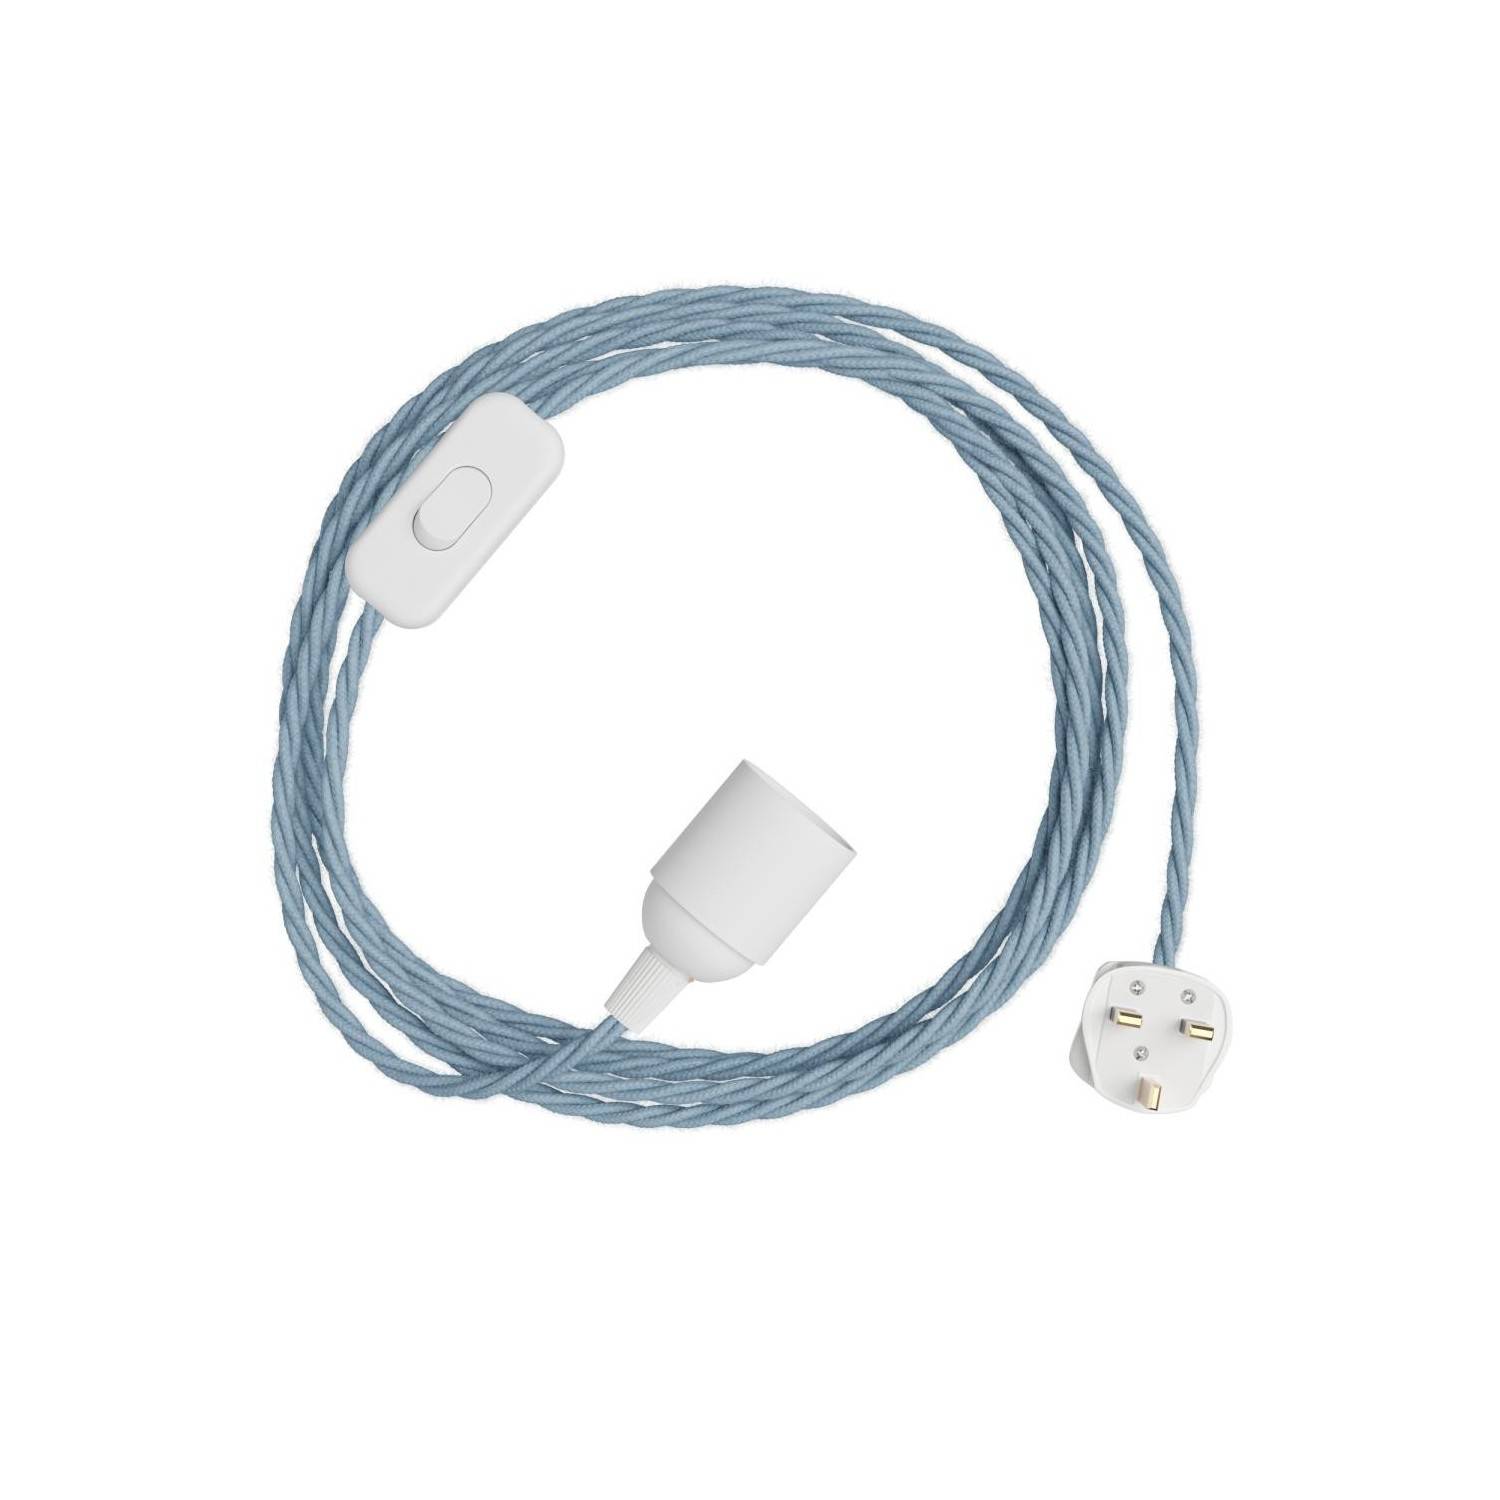 SnakeBis Twisted - Juego de cables con portalámparas, cable trenzado de tela y enchufe del Reino Unido